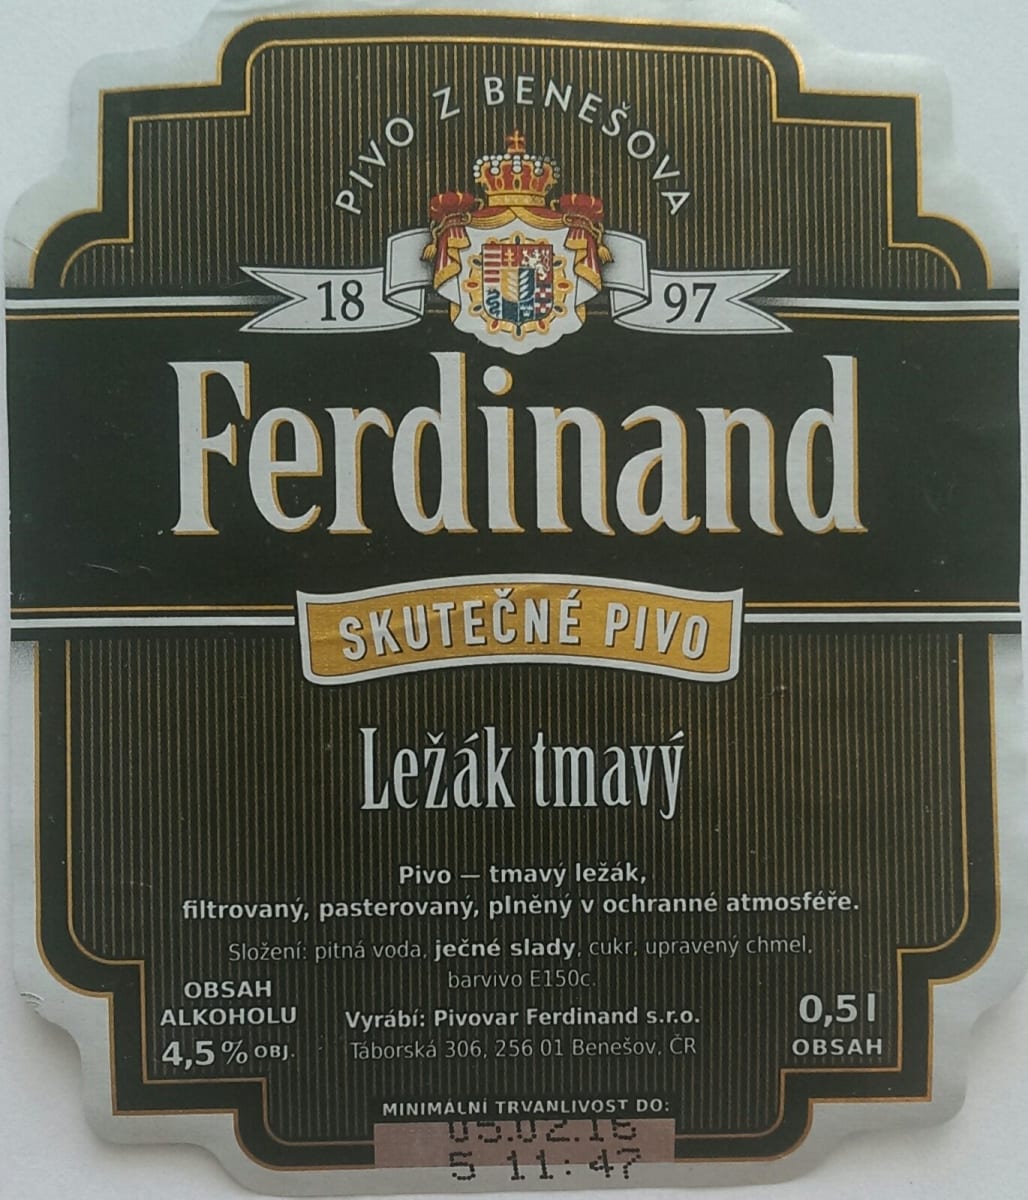 Ferdinand Ležák tmavý